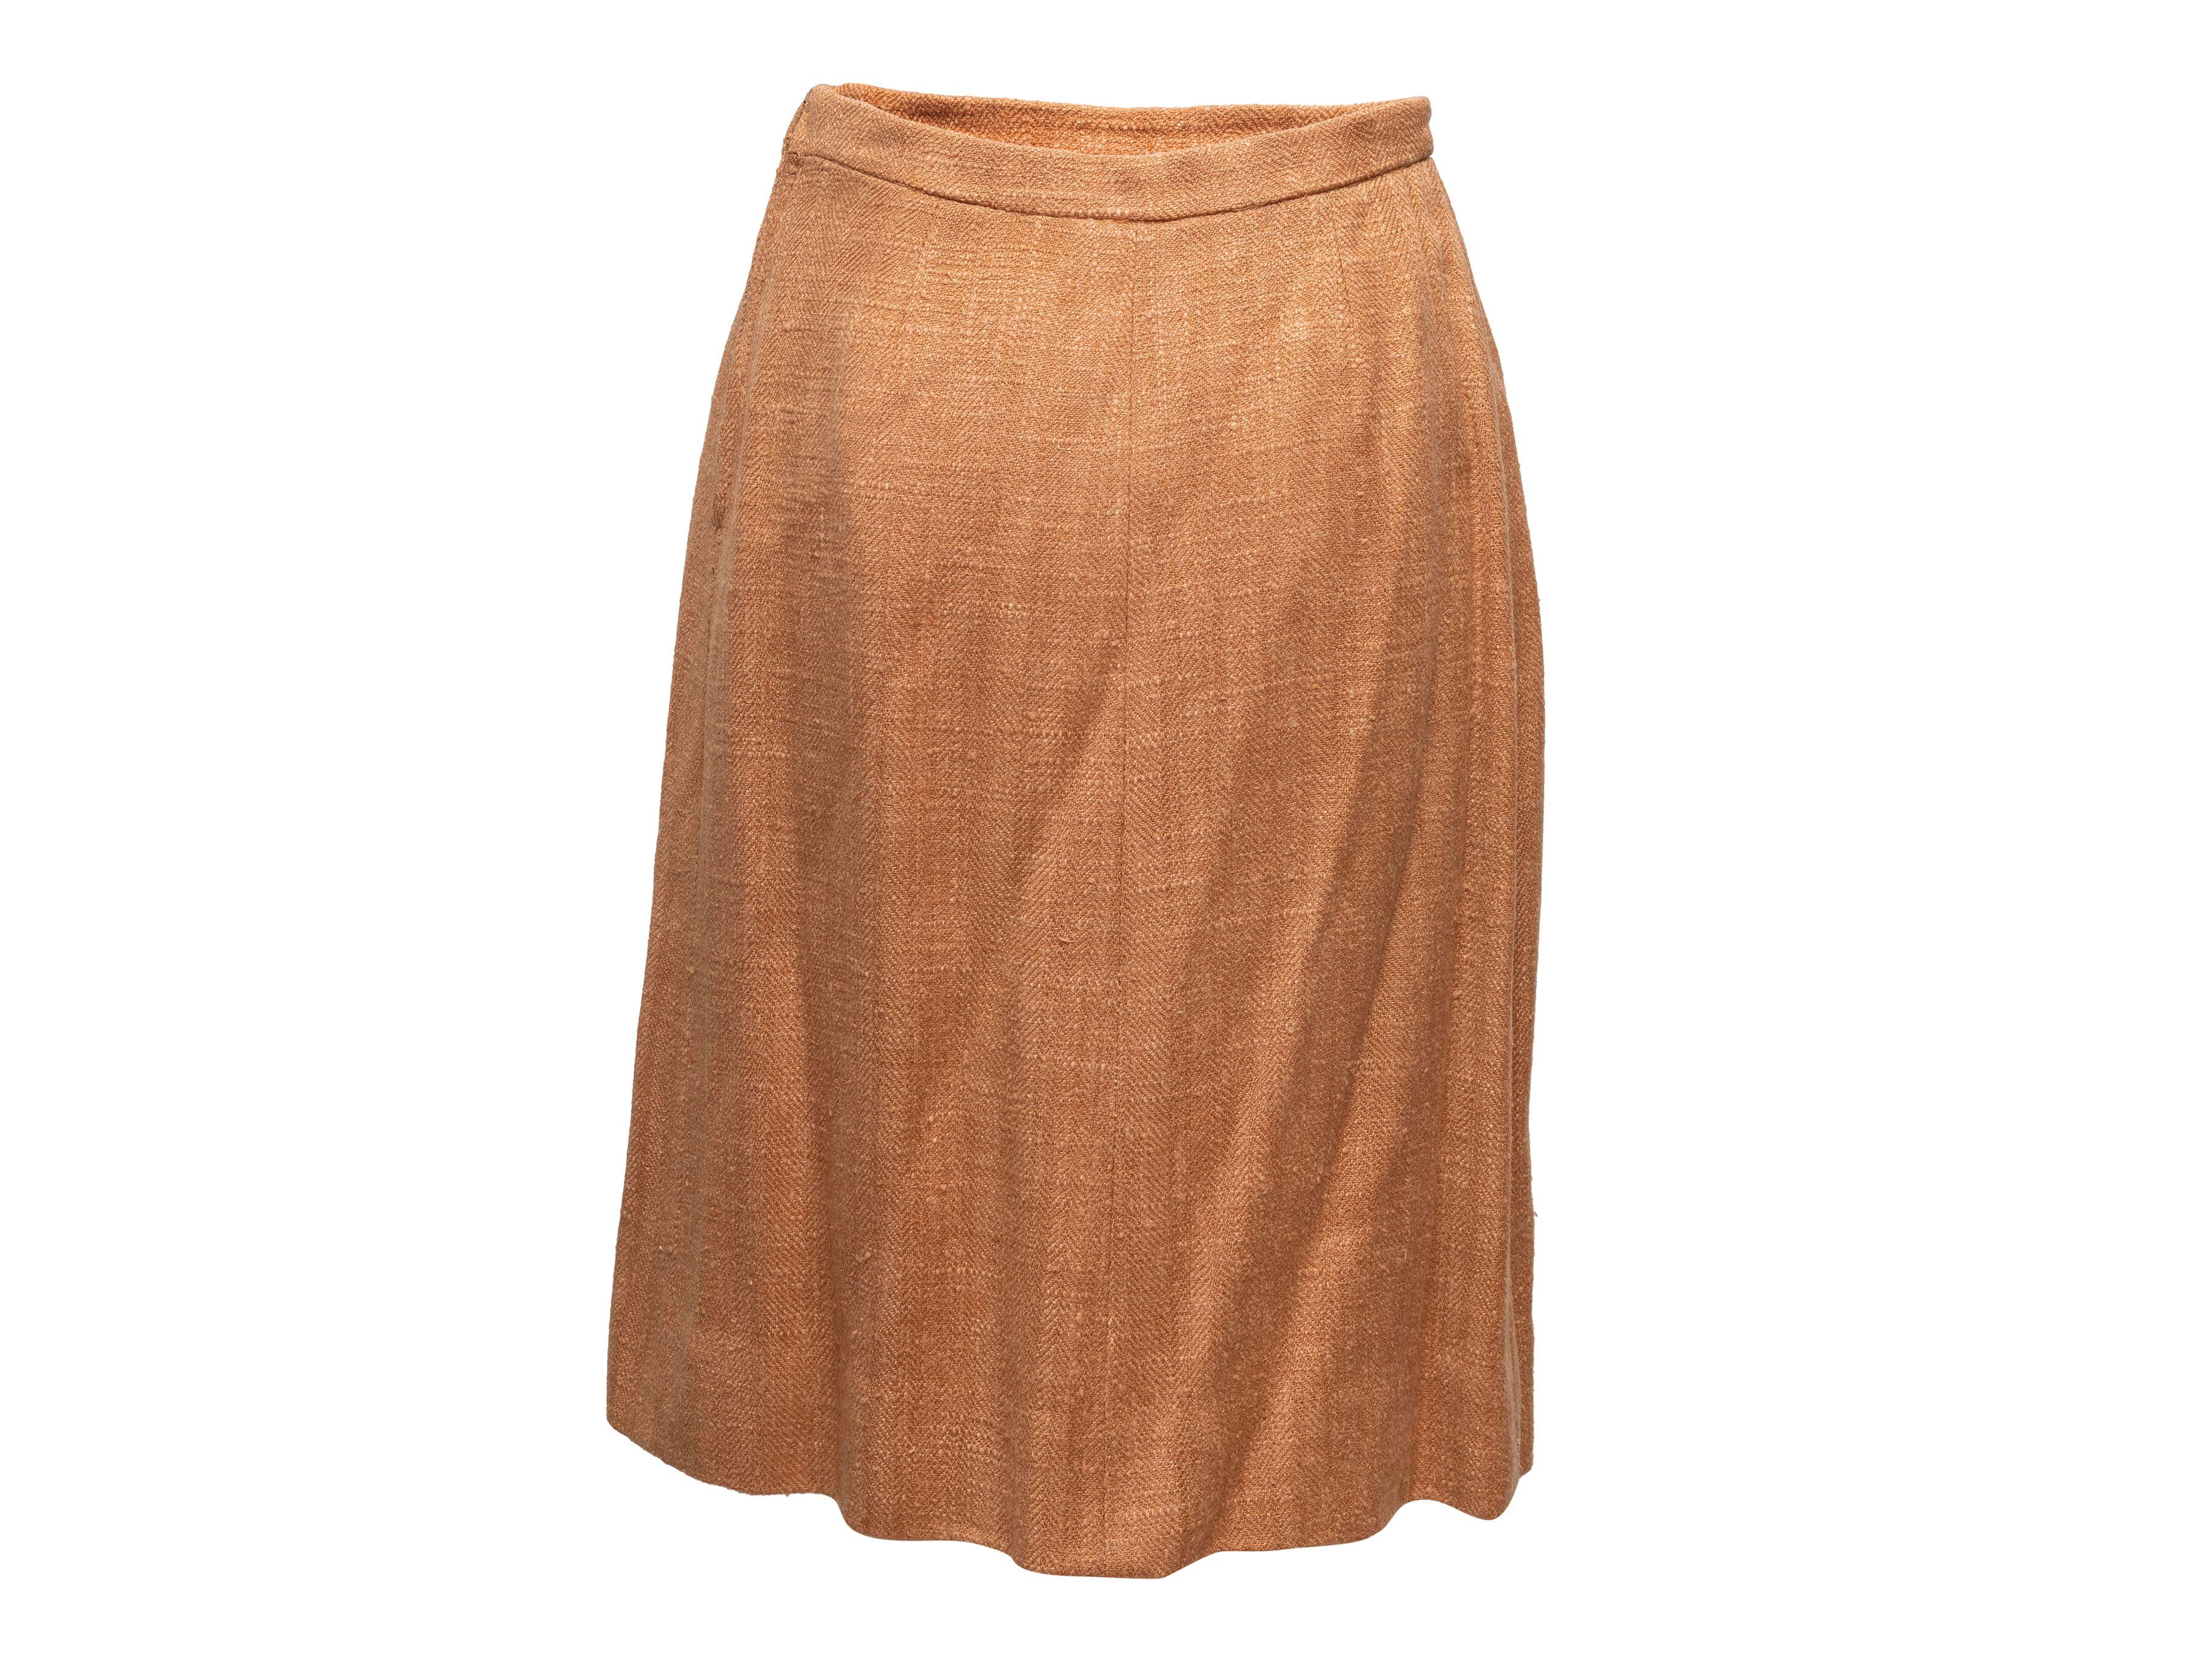 Hermes Tan Tweed Skirt Suit 2